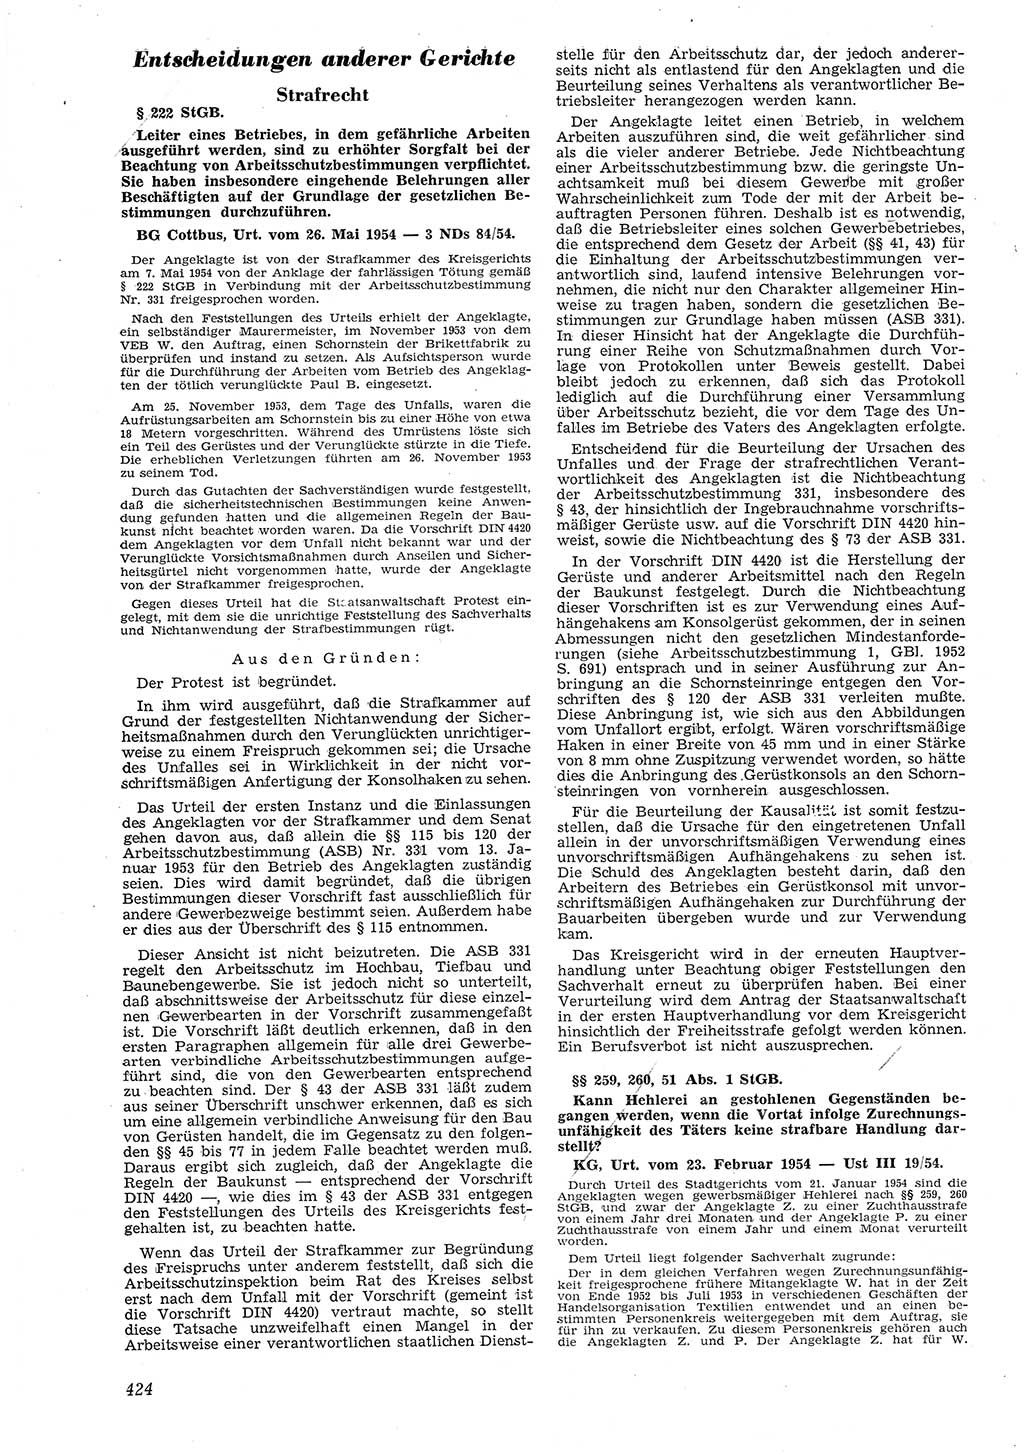 Neue Justiz (NJ), Zeitschrift für Recht und Rechtswissenschaft [Deutsche Demokratische Republik (DDR)], 8. Jahrgang 1954, Seite 424 (NJ DDR 1954, S. 424)